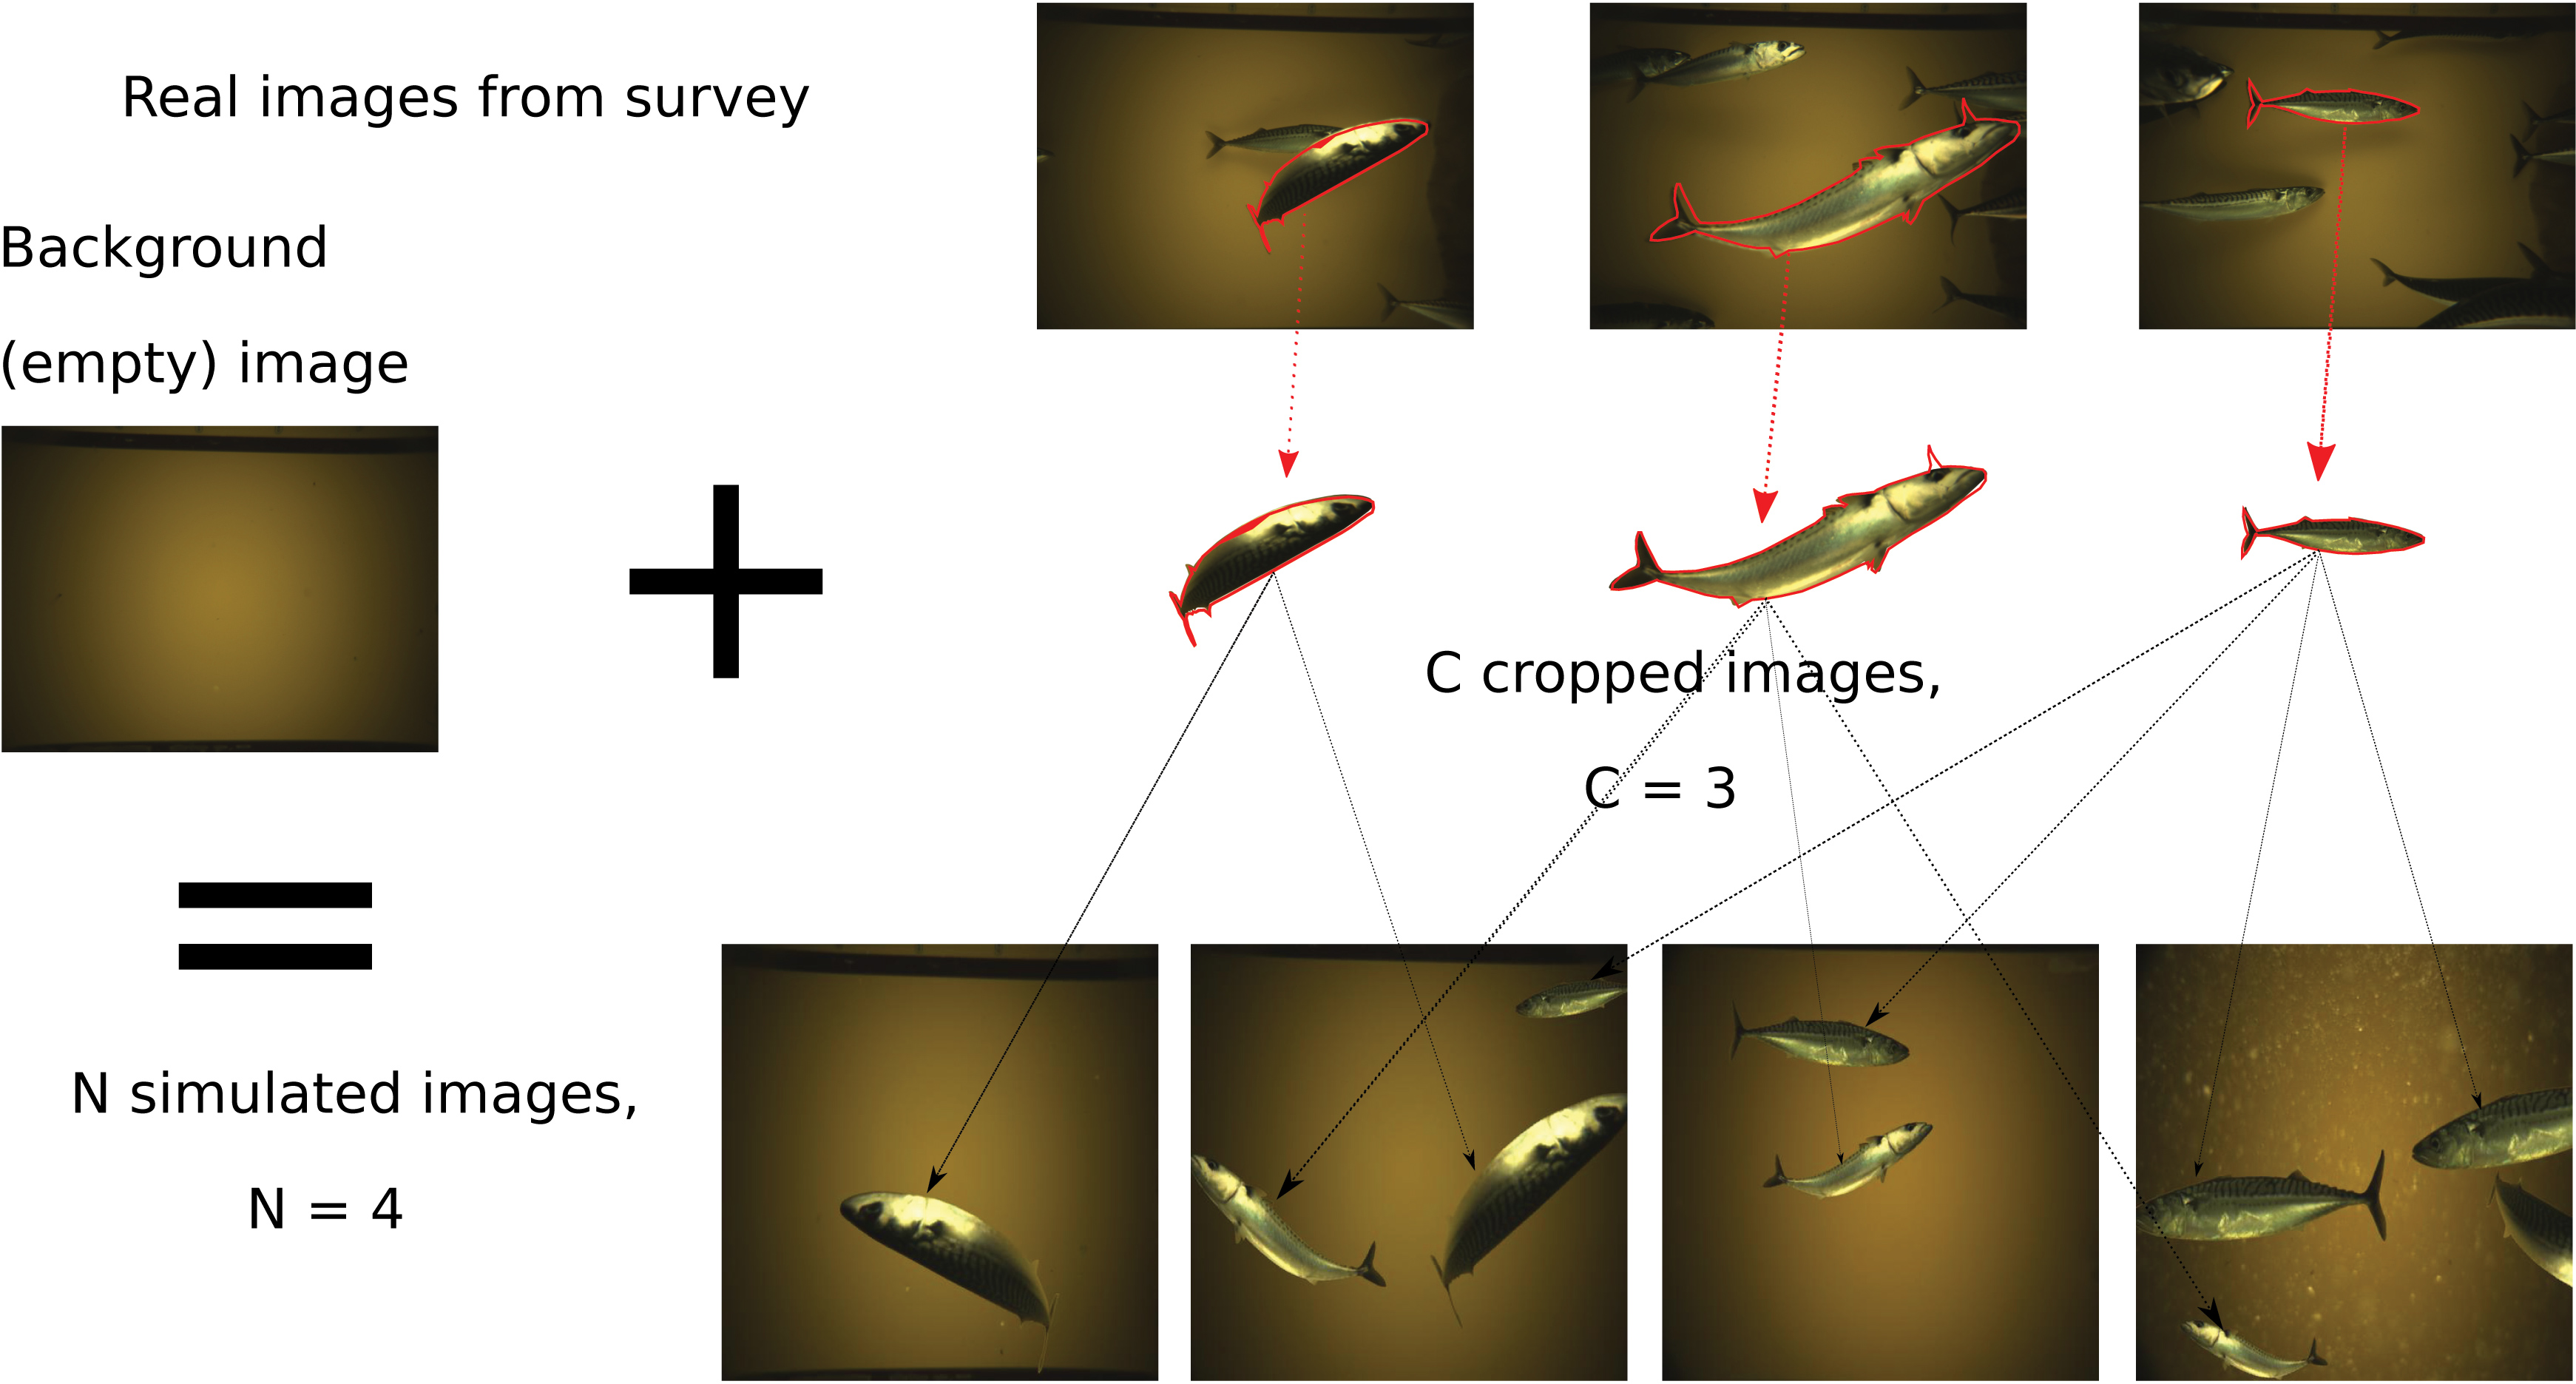 Illustrasjon som viser korleis fisk blei klipt ut av ekte bilde og sett saman til nye syntetiske bilde.